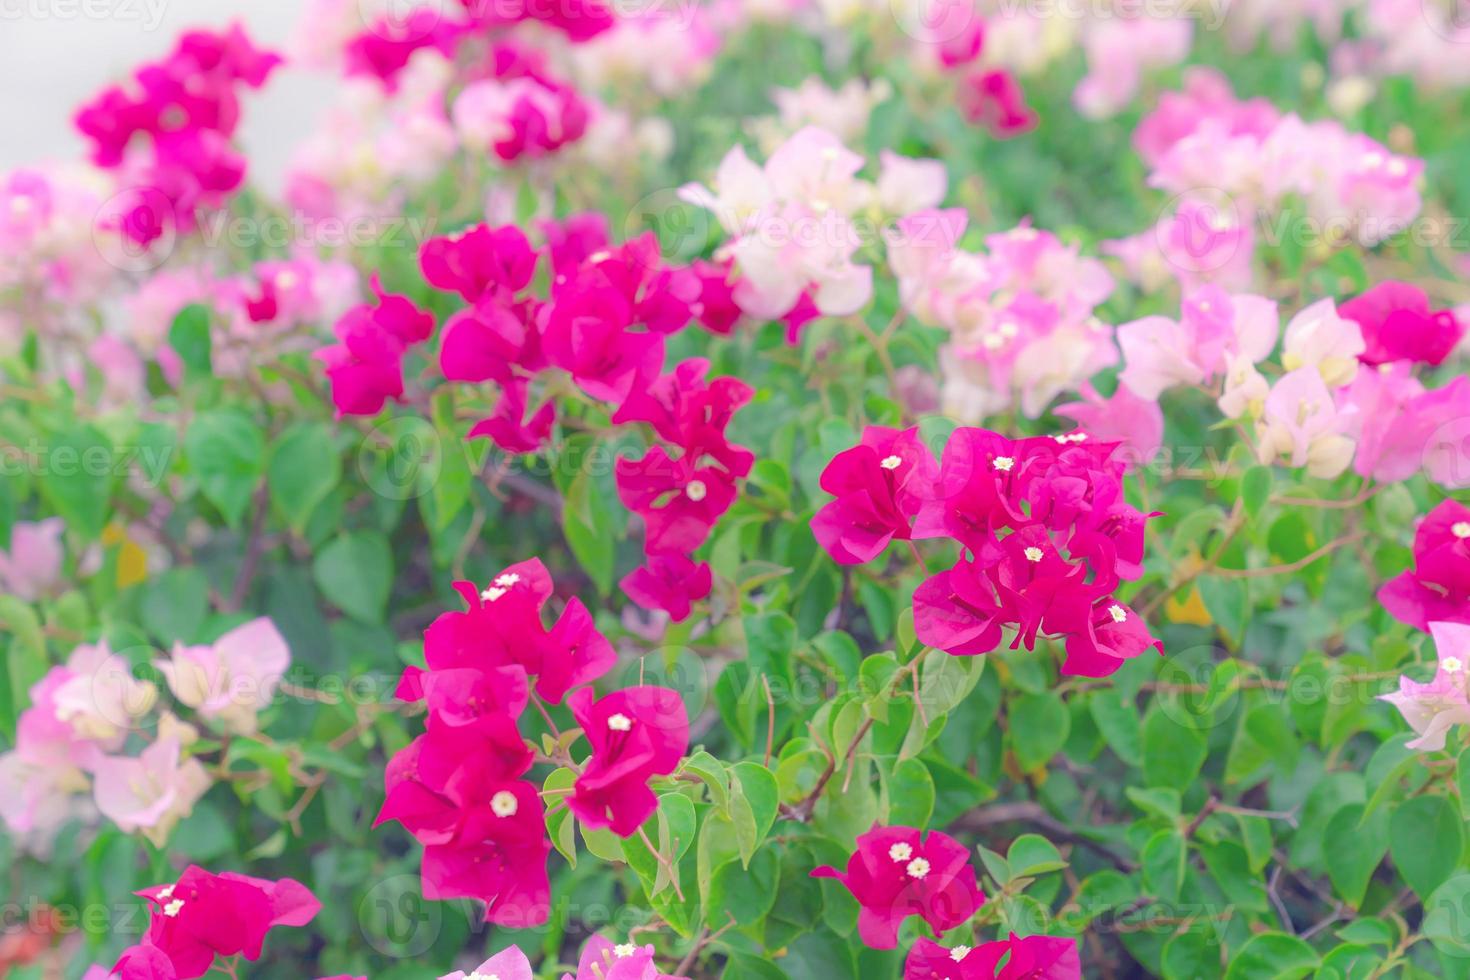 magnifique bougainvilliers fleur pour fond d'écran texture et fond, doux concentrer photo